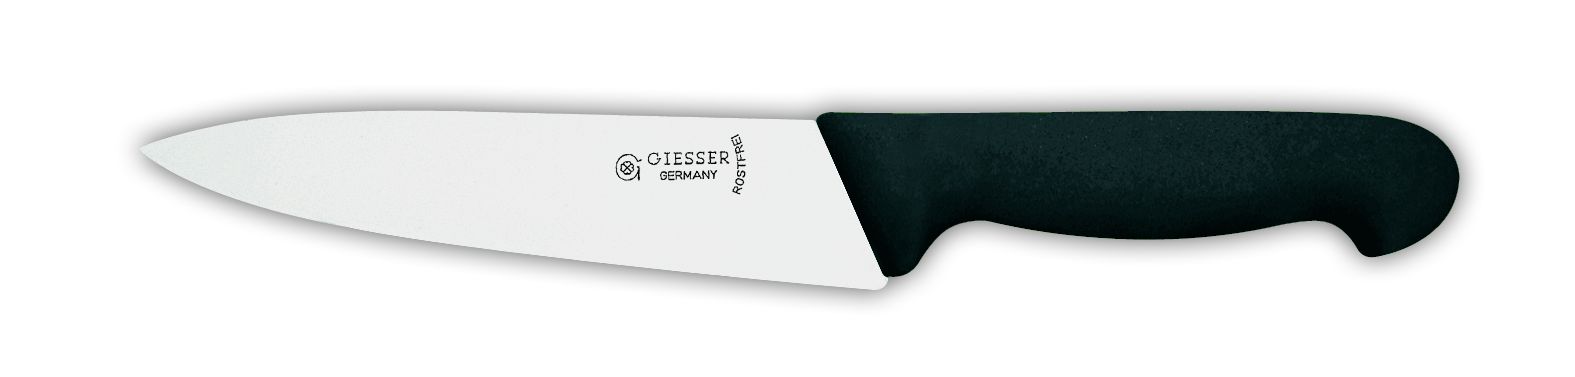 Нож поварской 8456, 18 см,  синяя рукоятка